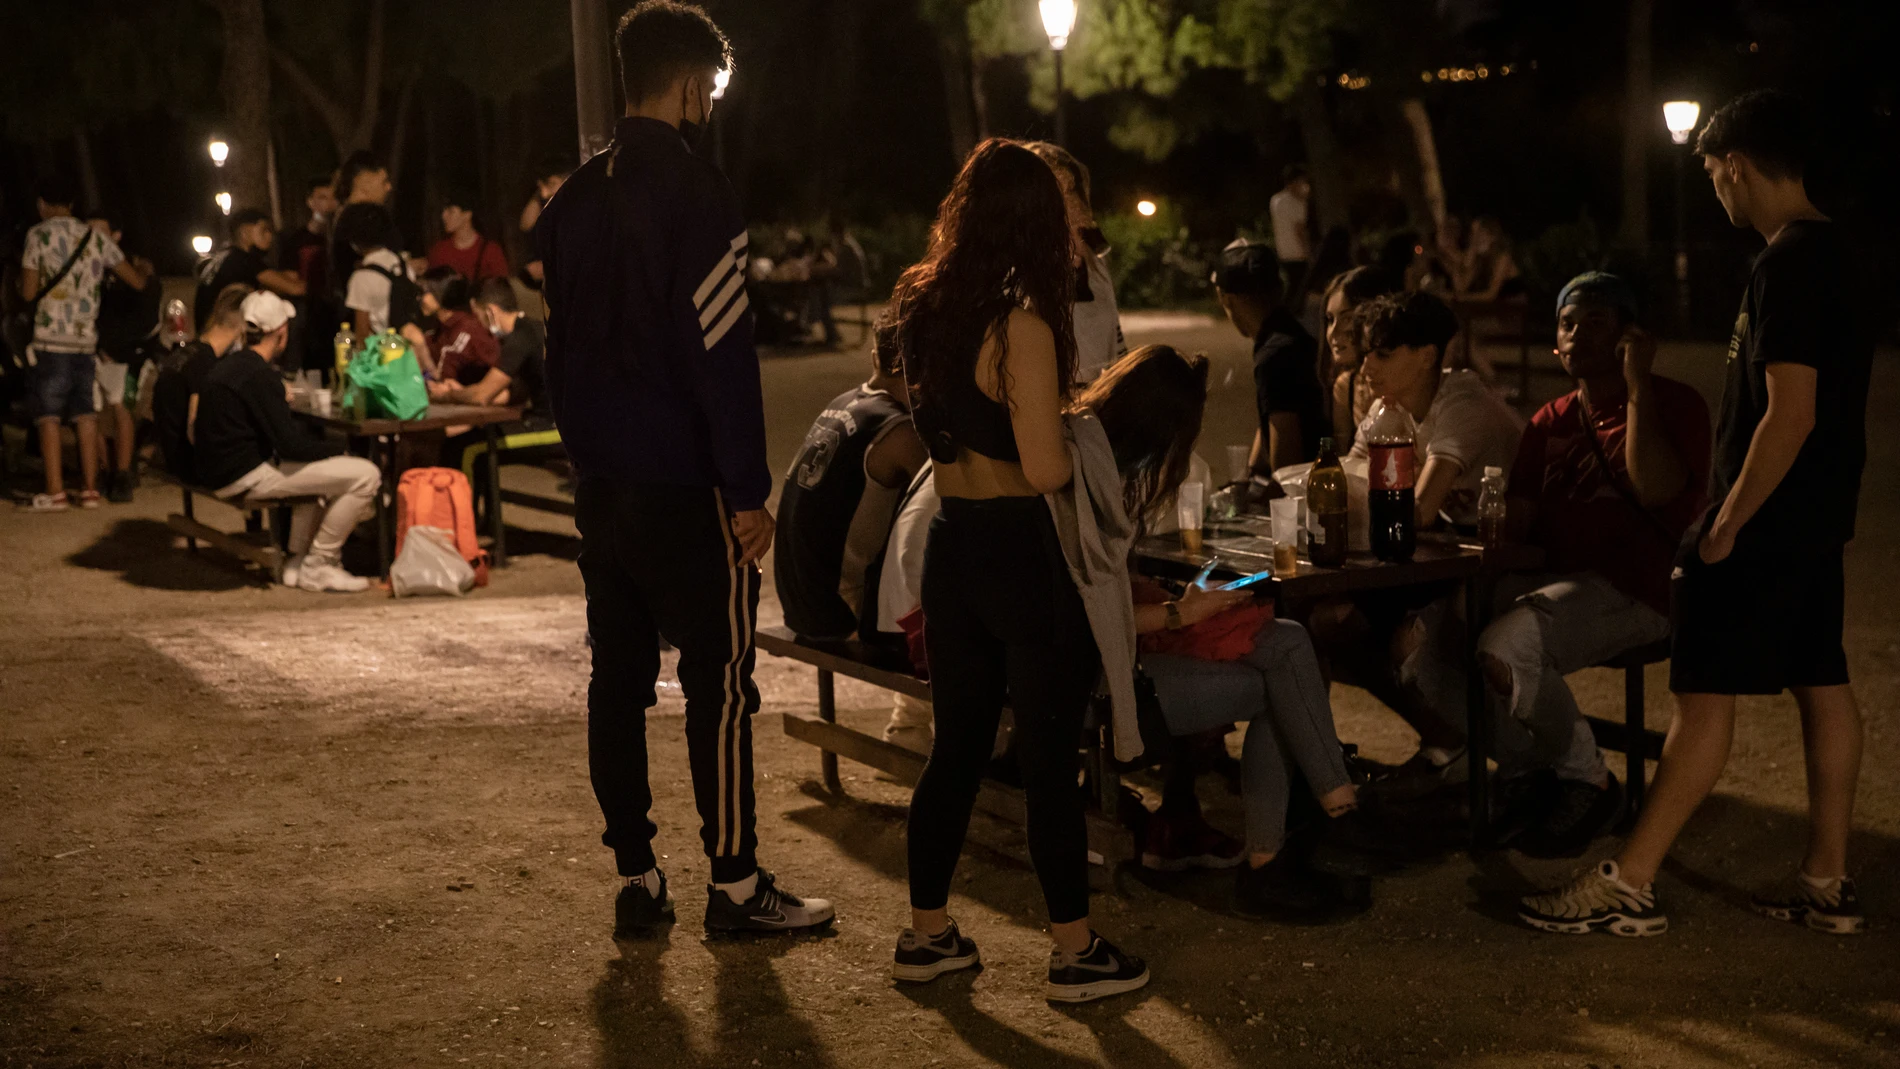 Jóvenes celebrando el fin de los exámenes bebiendo en el distrito de Moncloa.